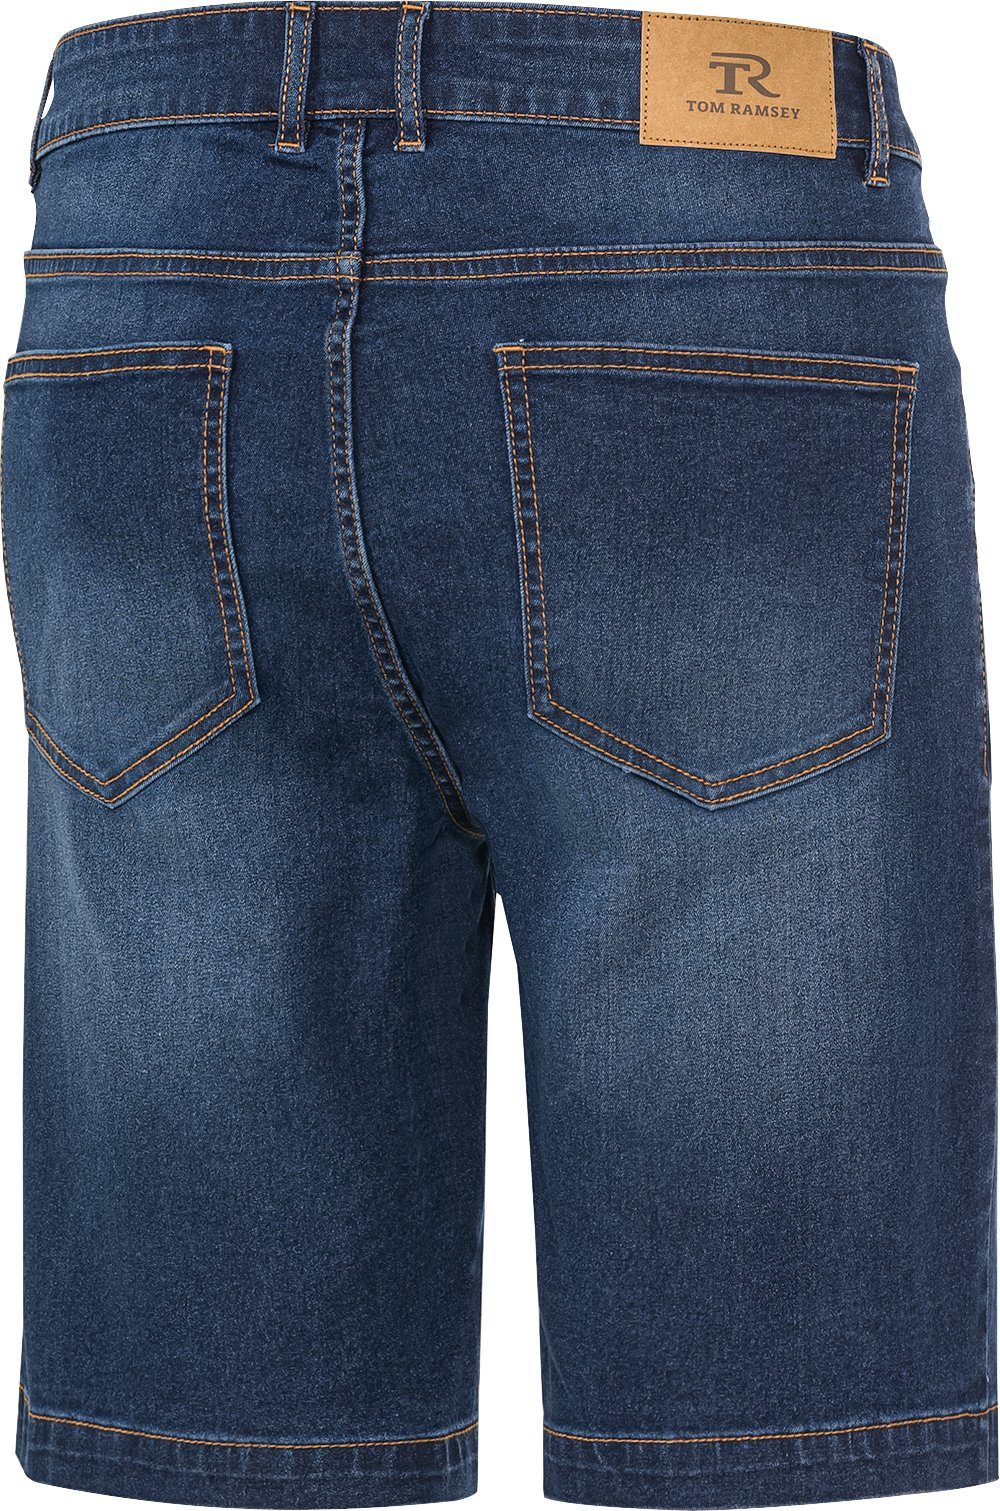 Tom Ramsey Jeansbermudas im mit 5-Pocket-Style dunkelblau Bund durch optimaler Passform flexiblen